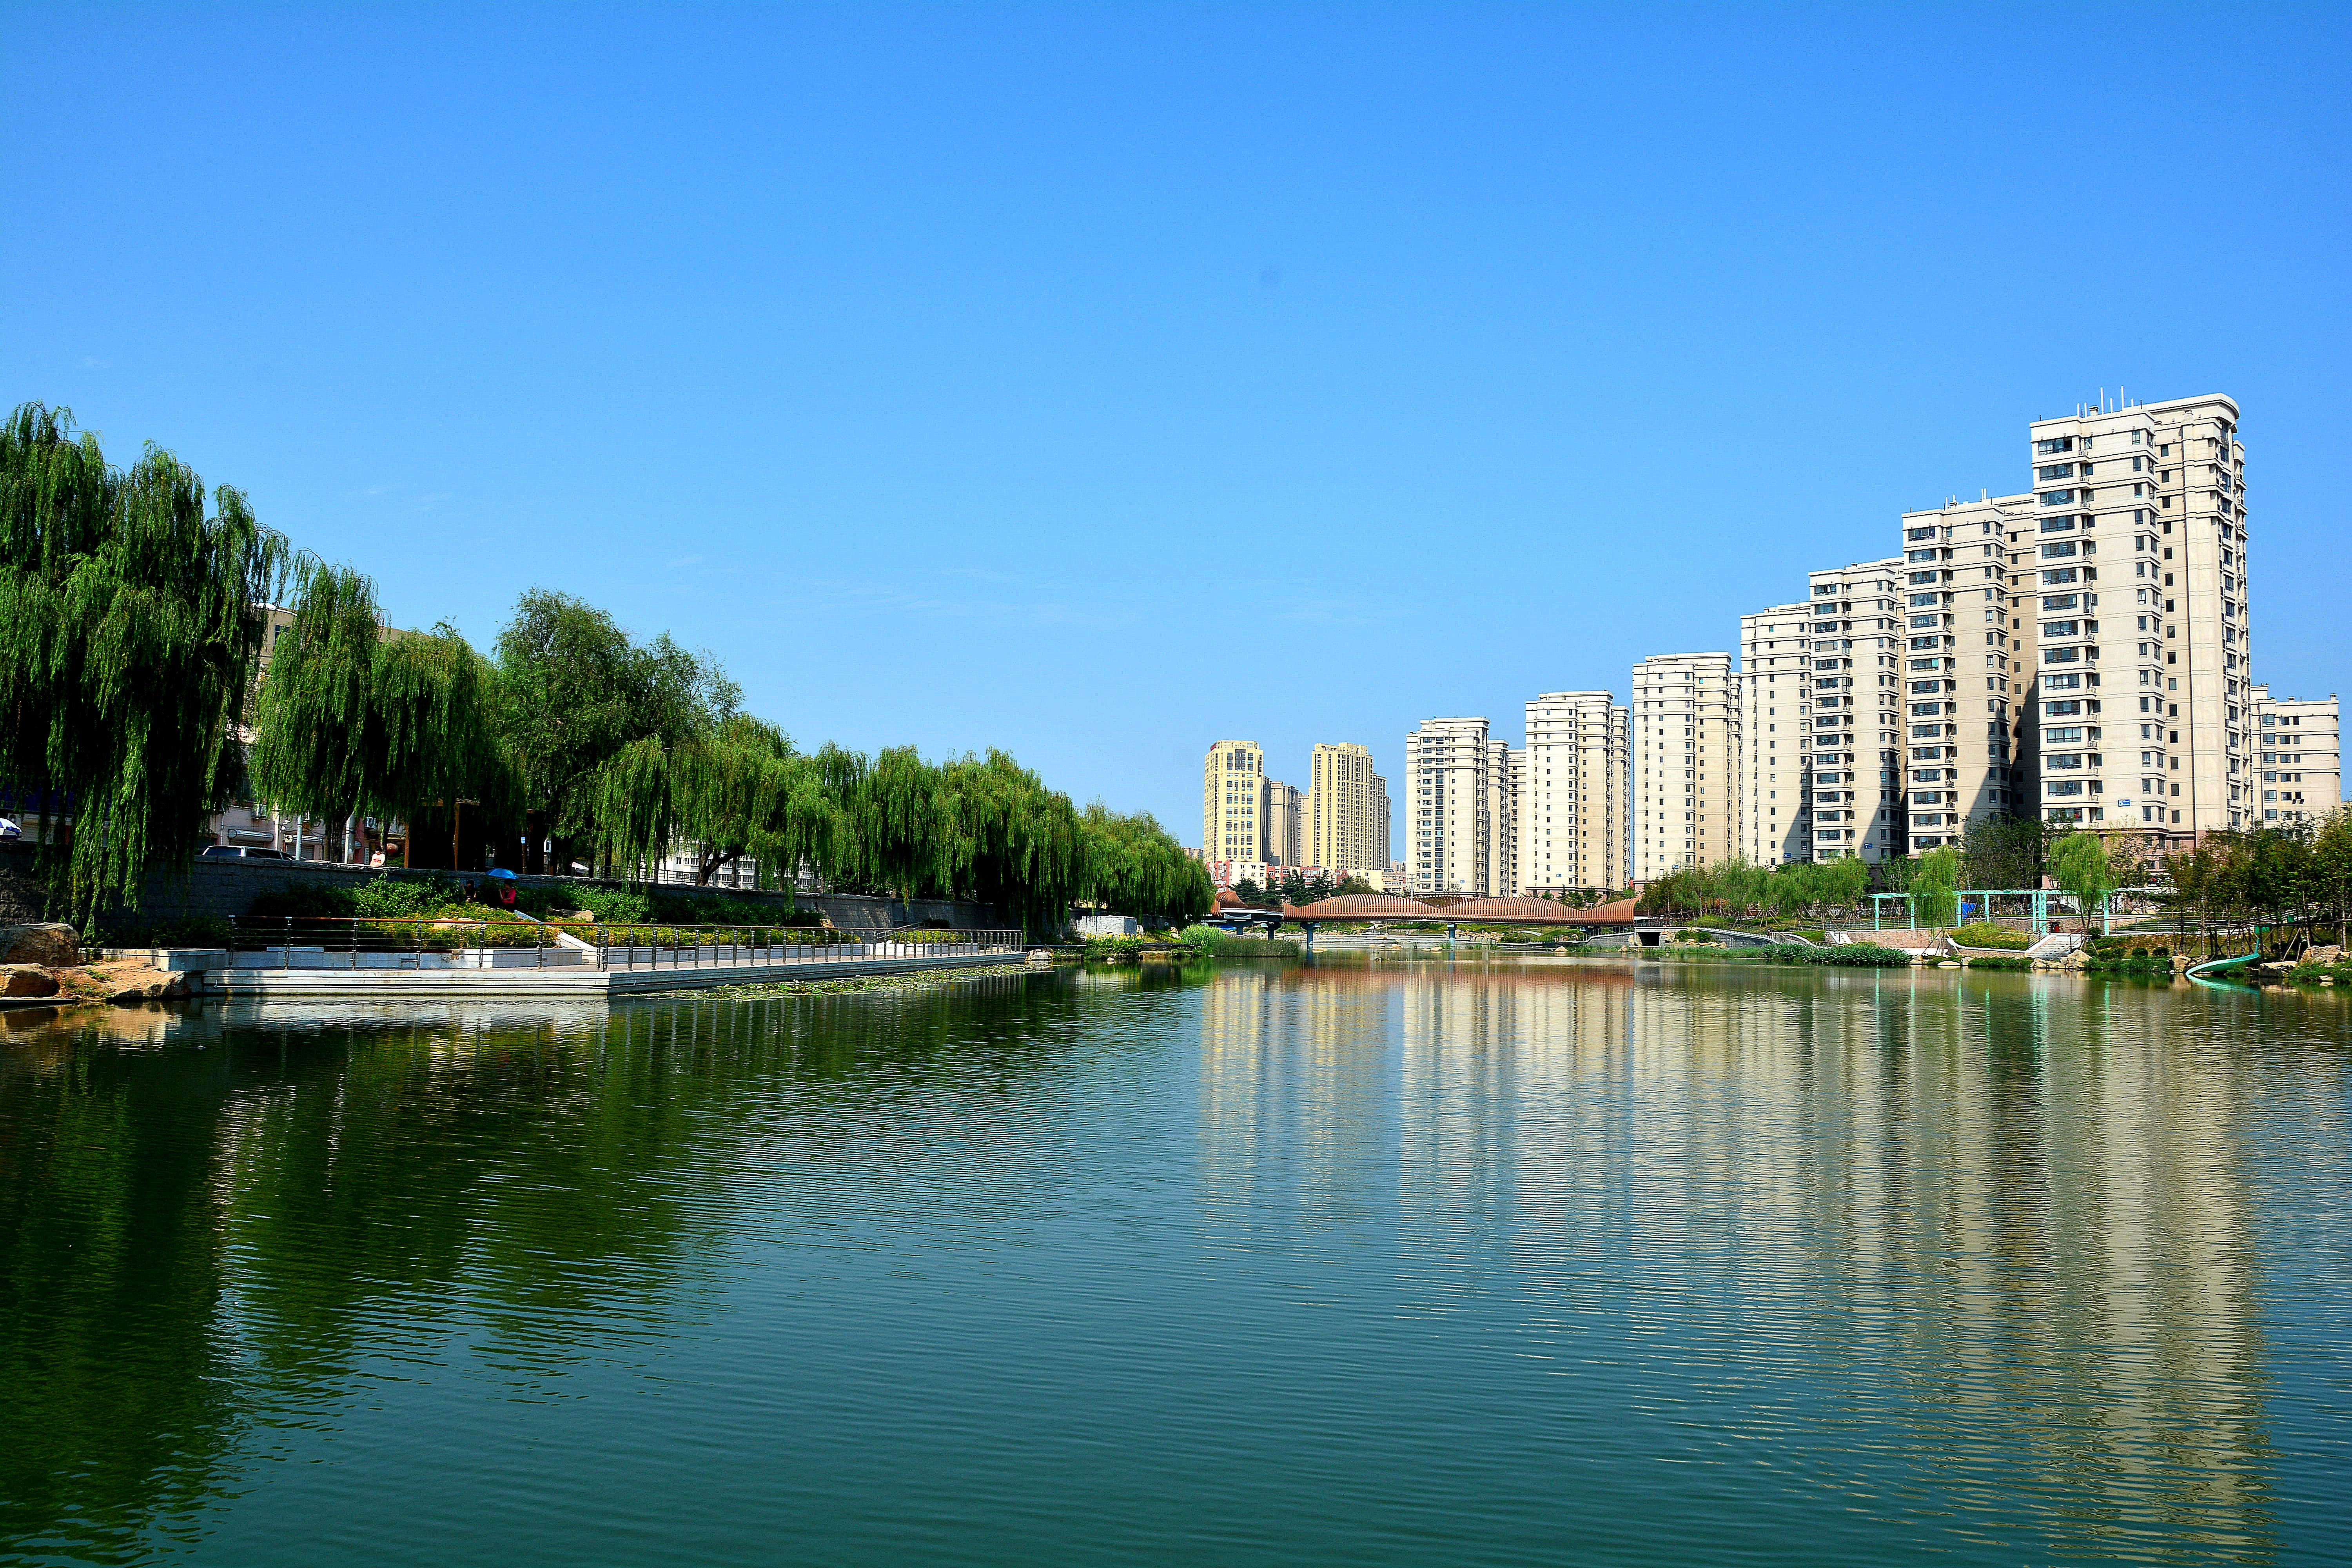 上流佳苑小区有着600多年历史、因李村河而得名